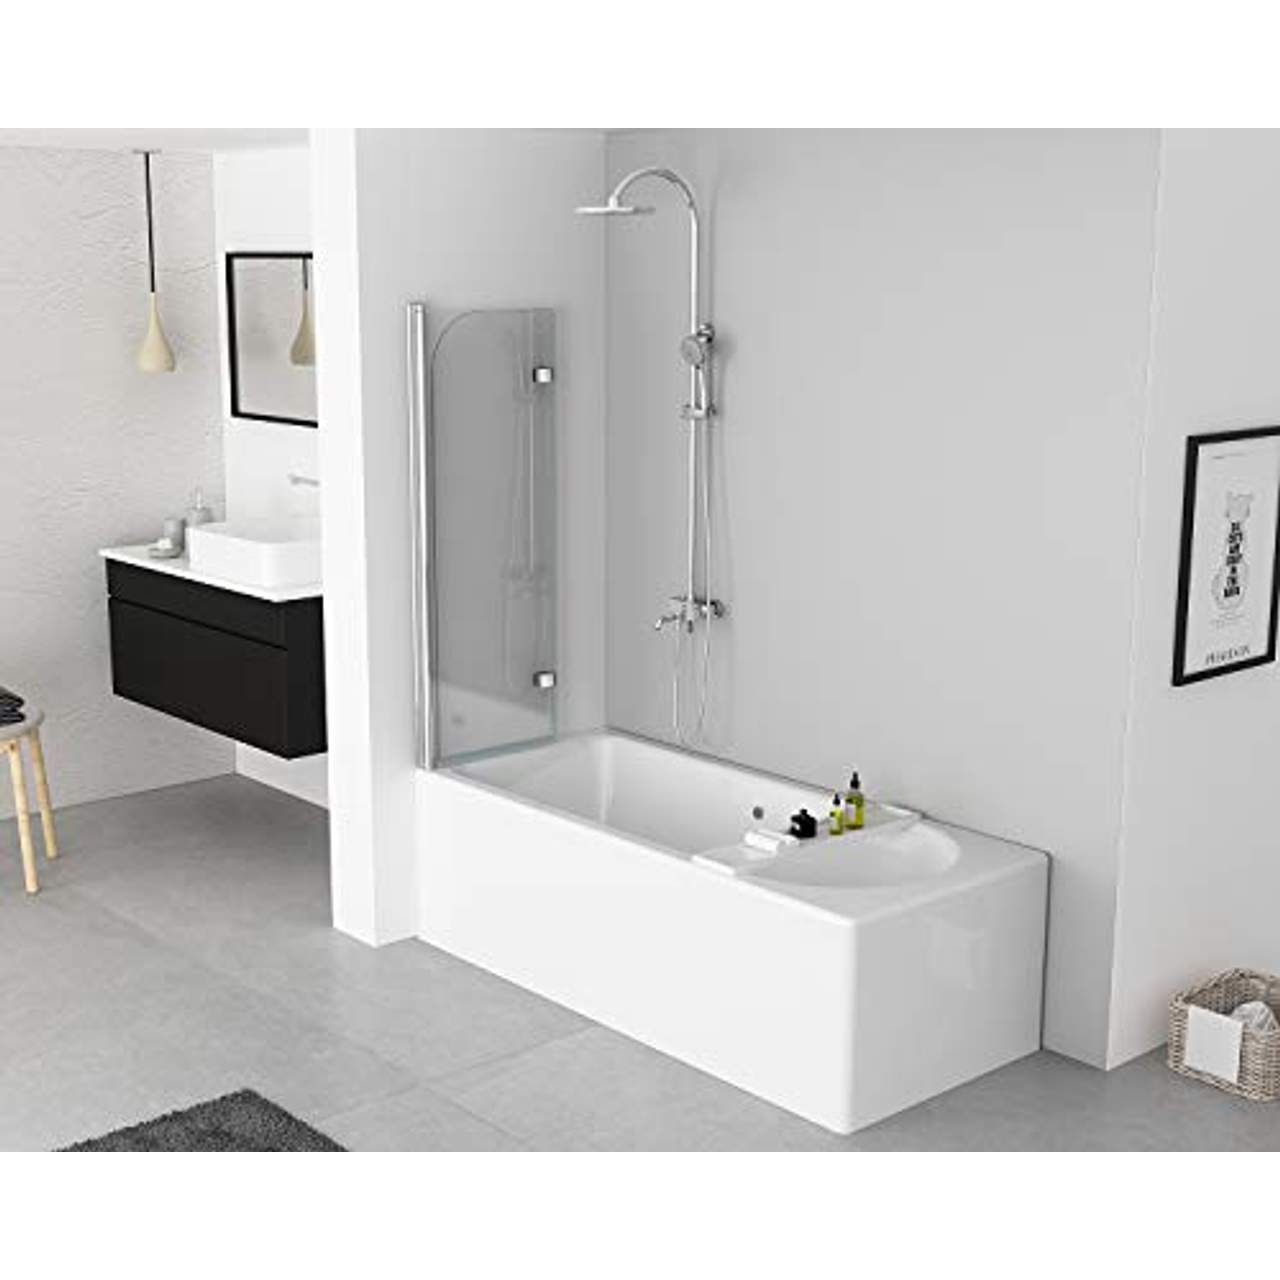 IMPTS 100x140cm Duschwand für Badewanne 2 TLG